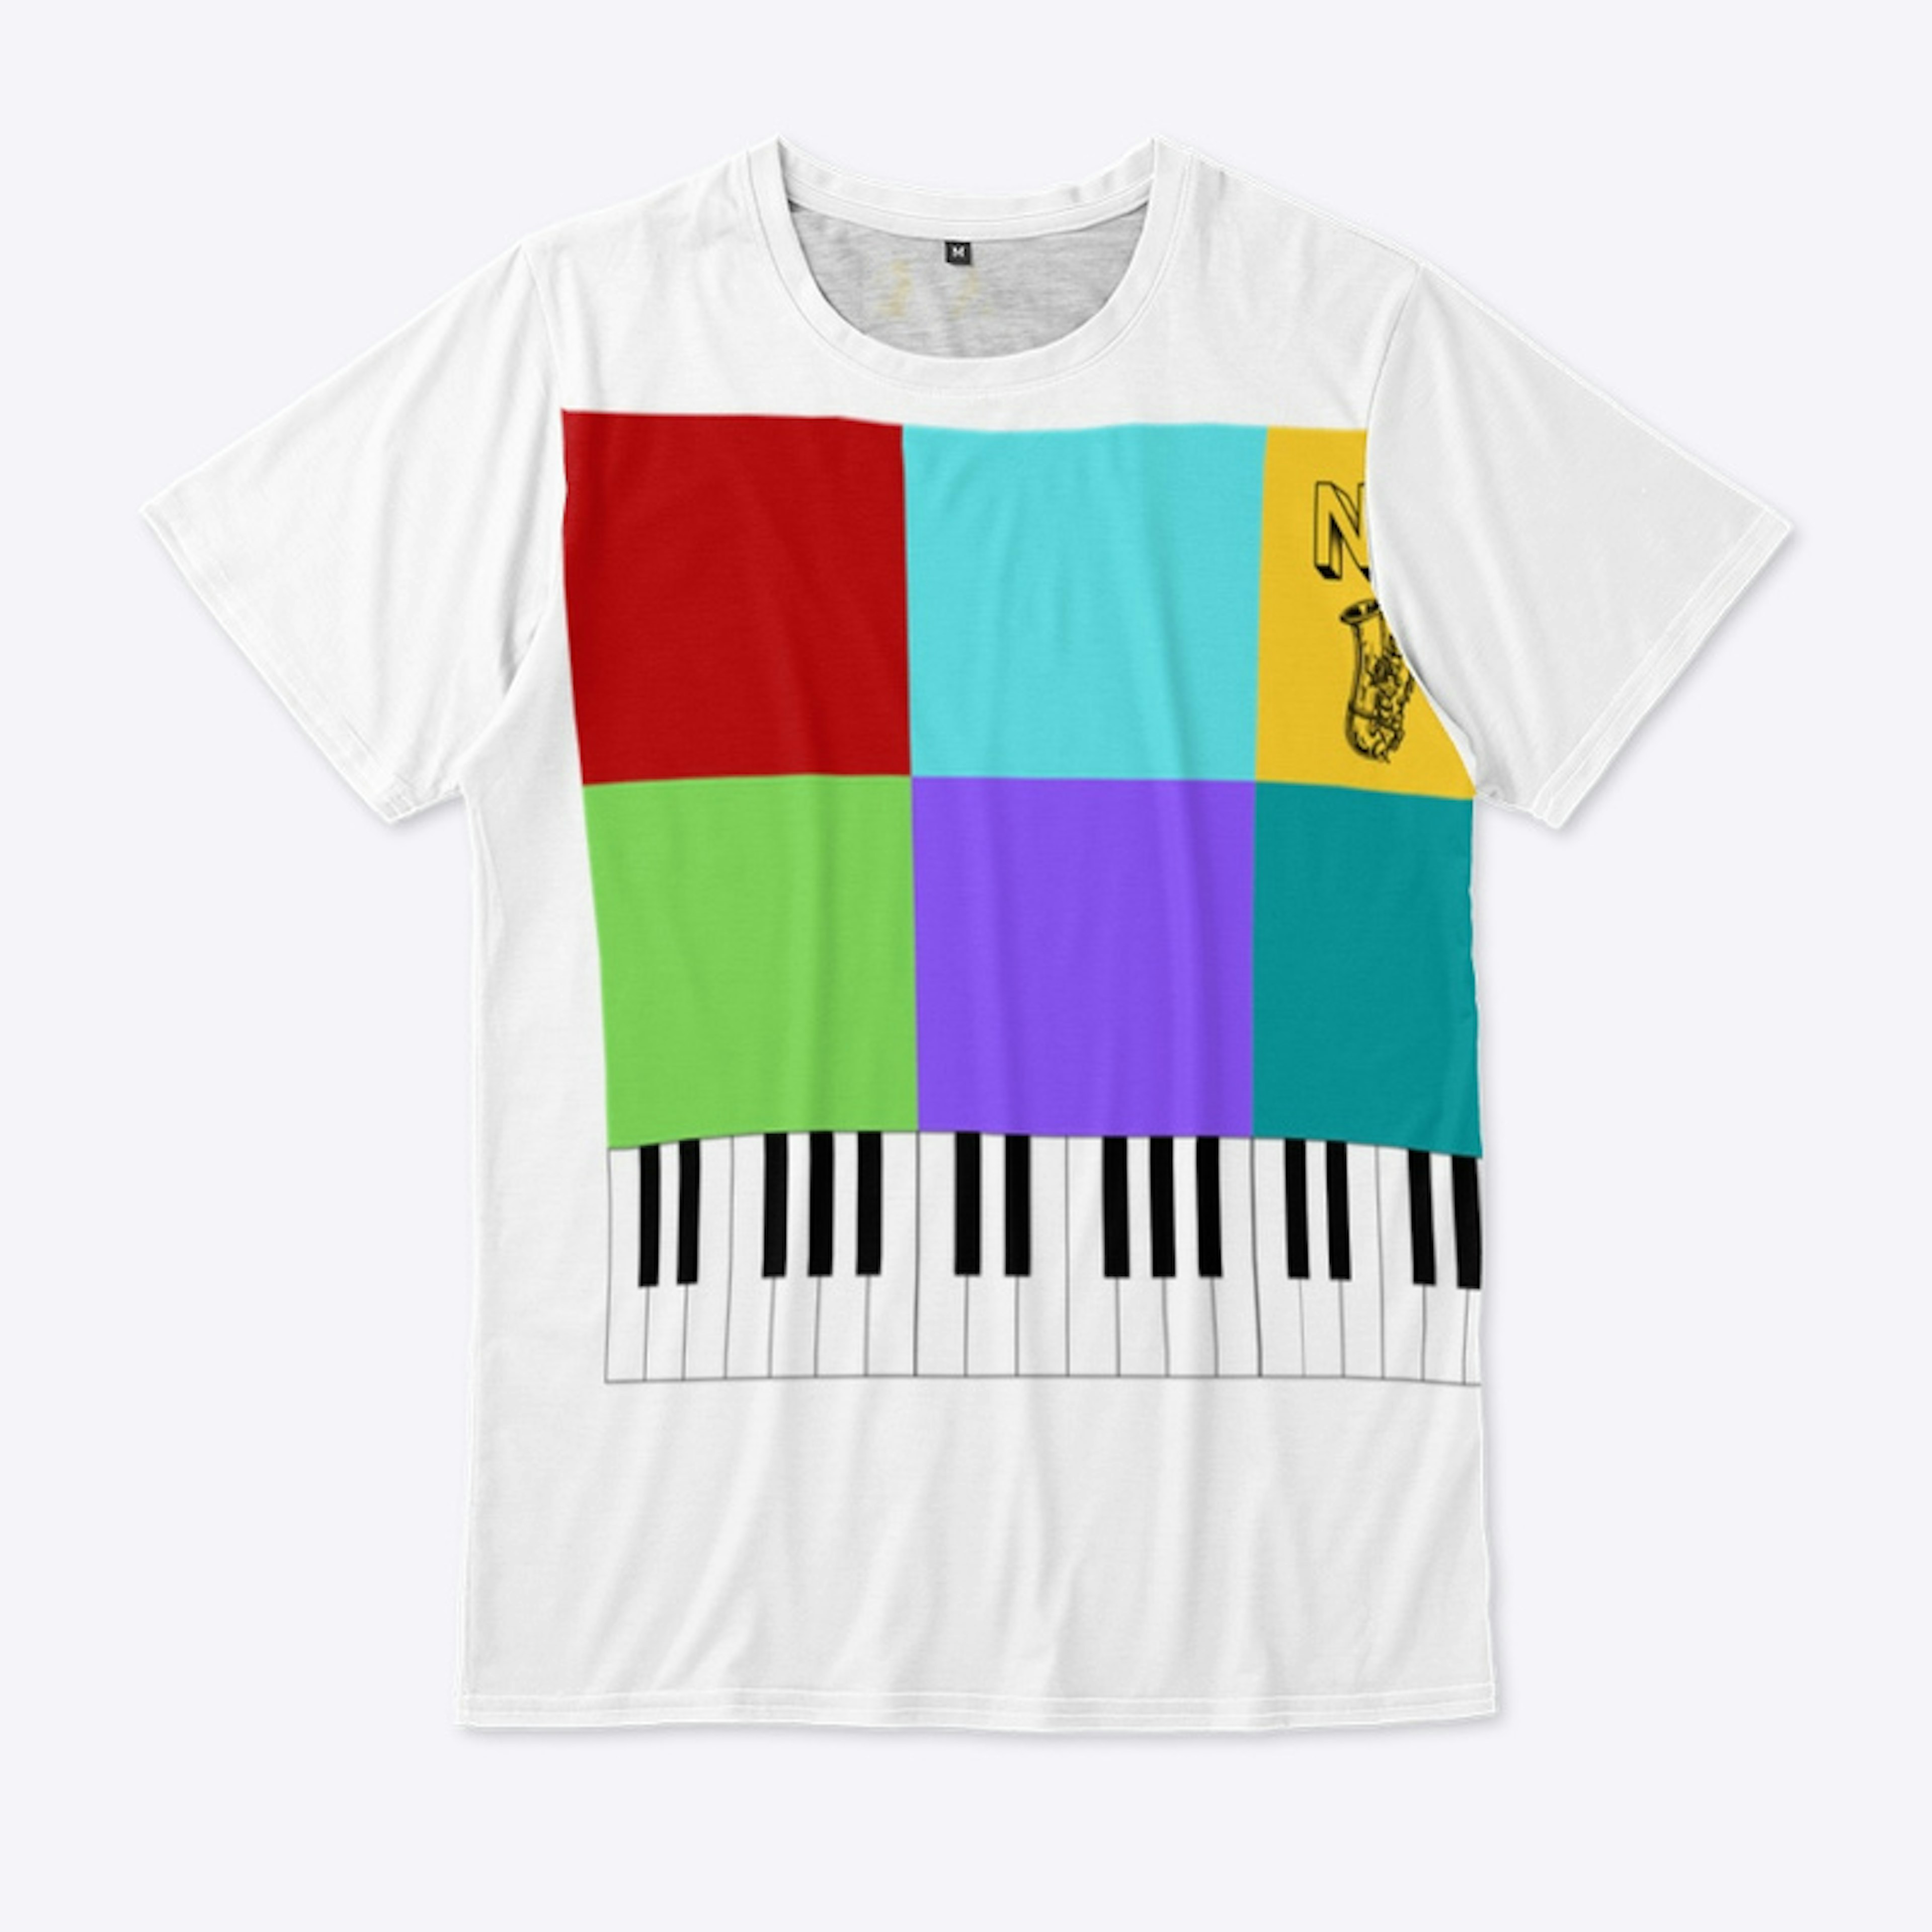 Jazz Piano - White